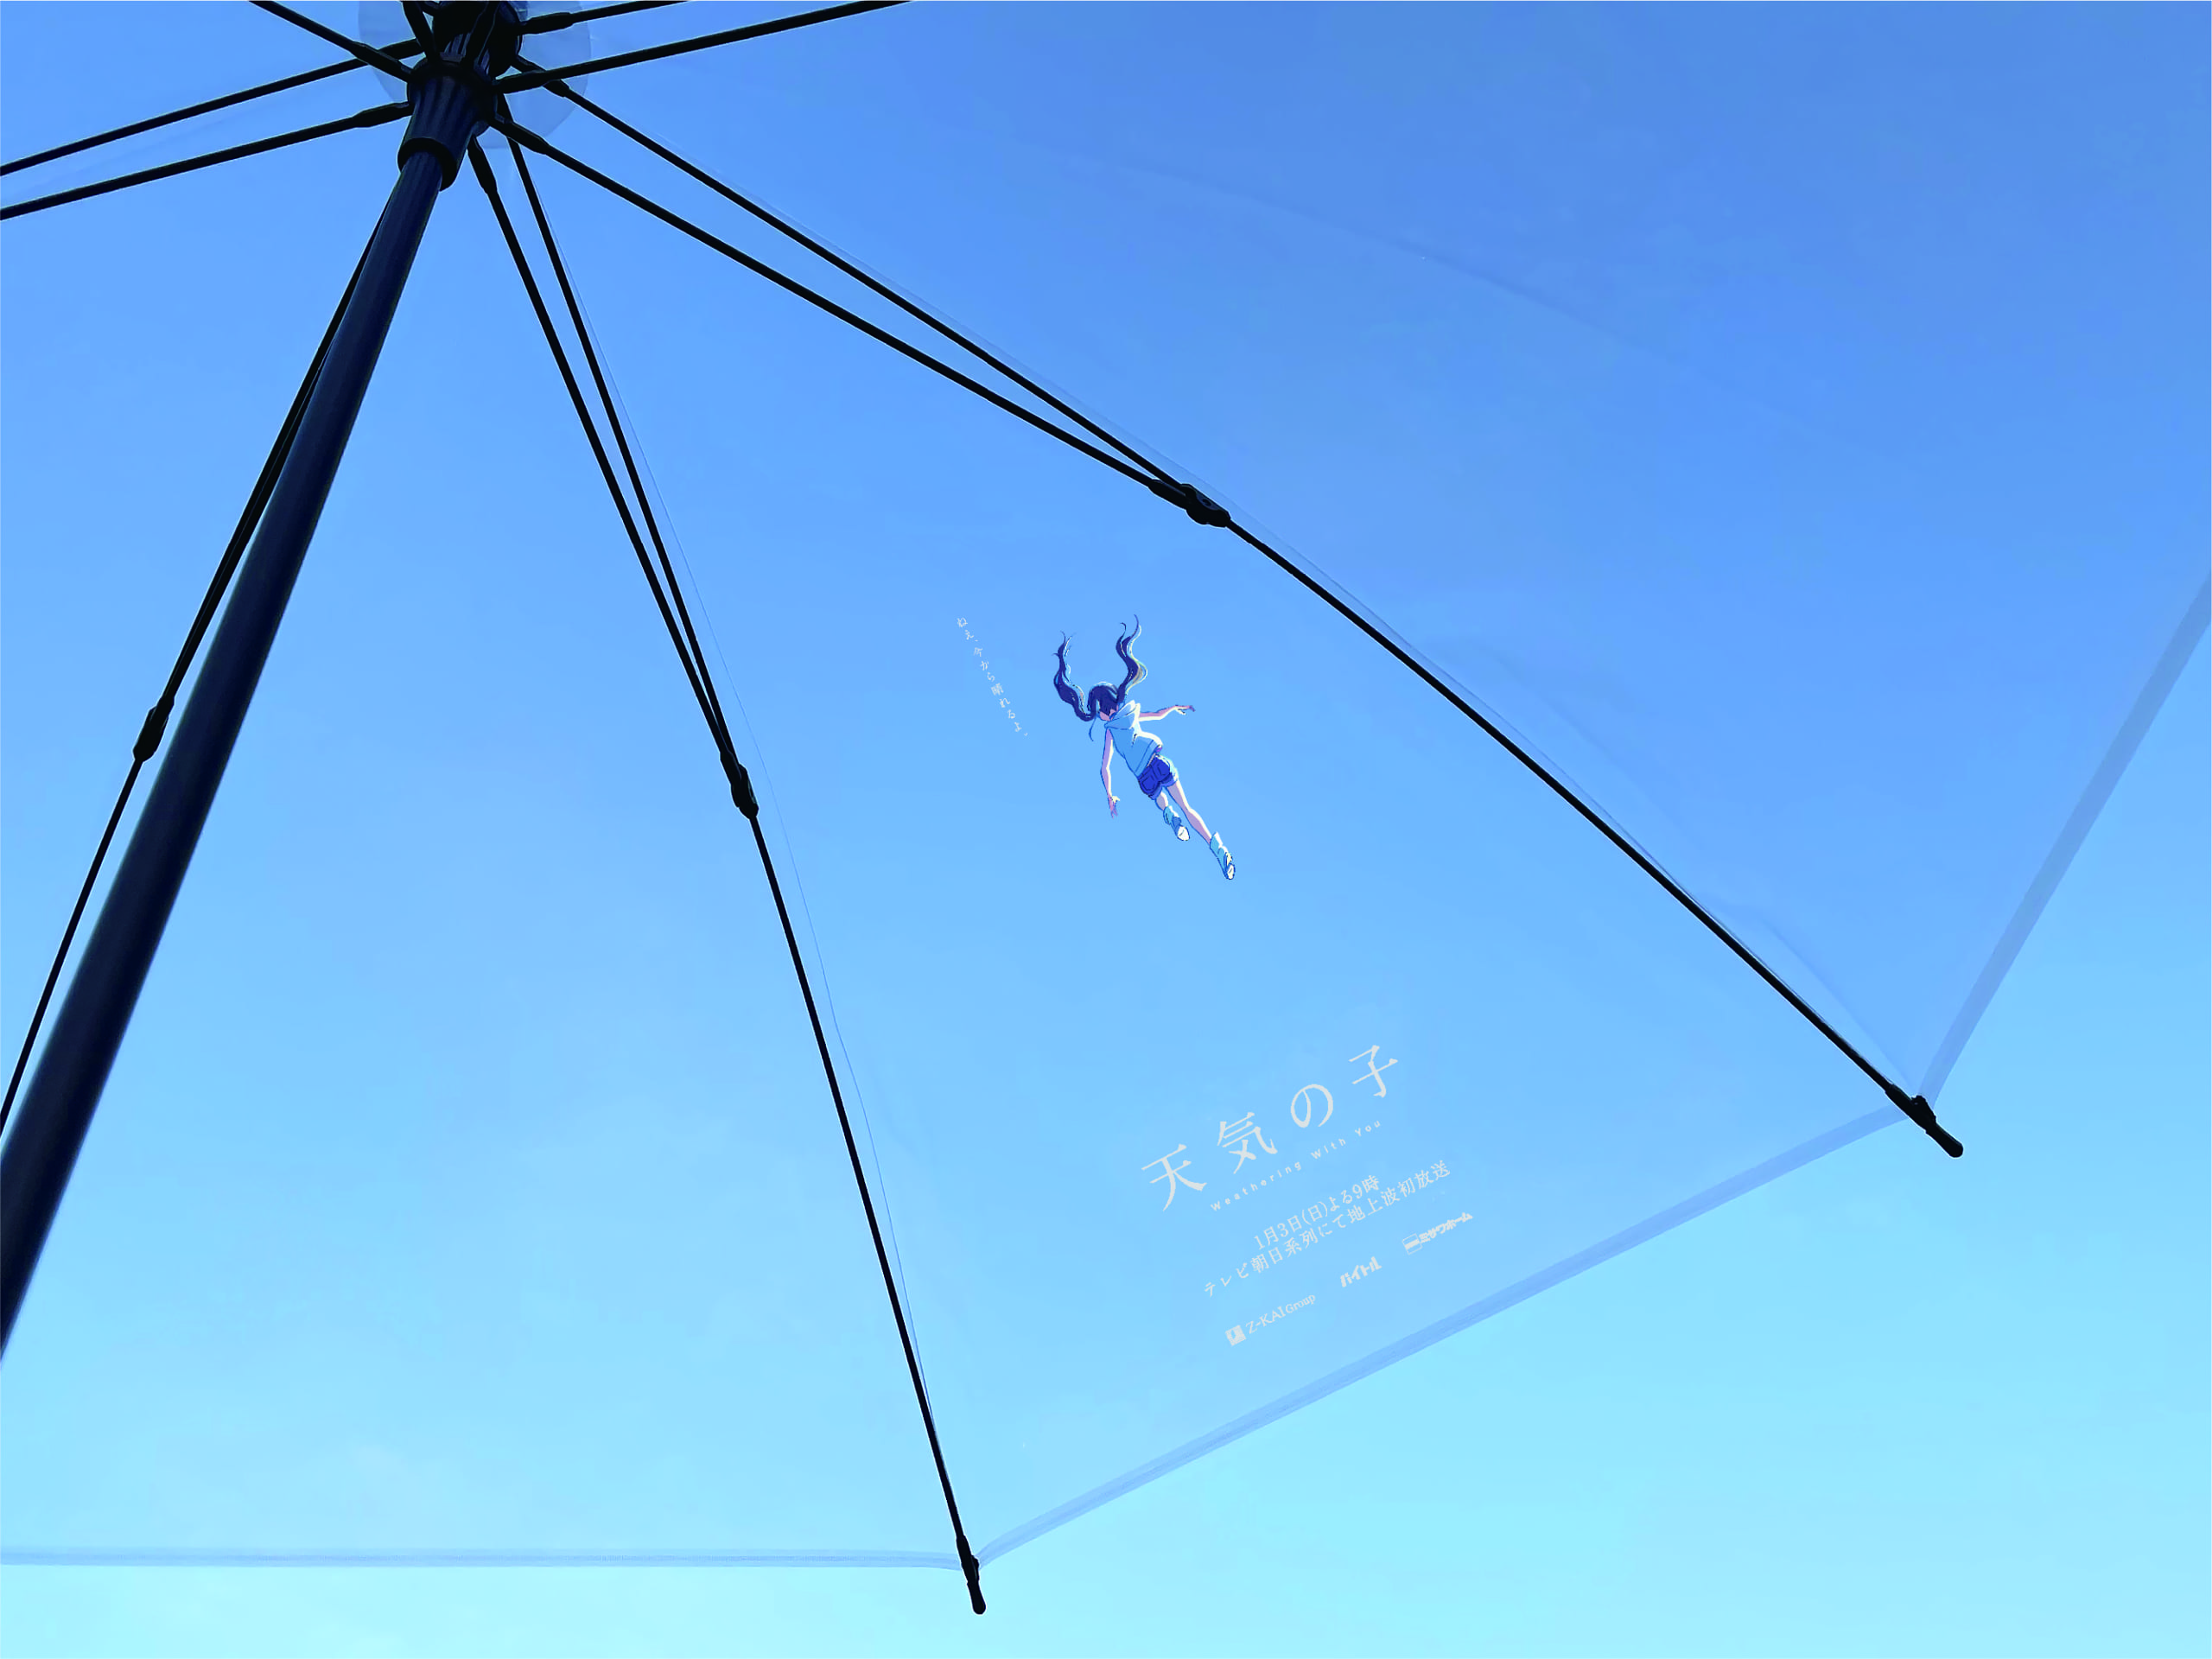 天気の子 地上波放送を記念して傘シェアリングサービス アイカサ とコラボ 陽菜が空に浮かぶ透明傘が登場 Anime Recorder